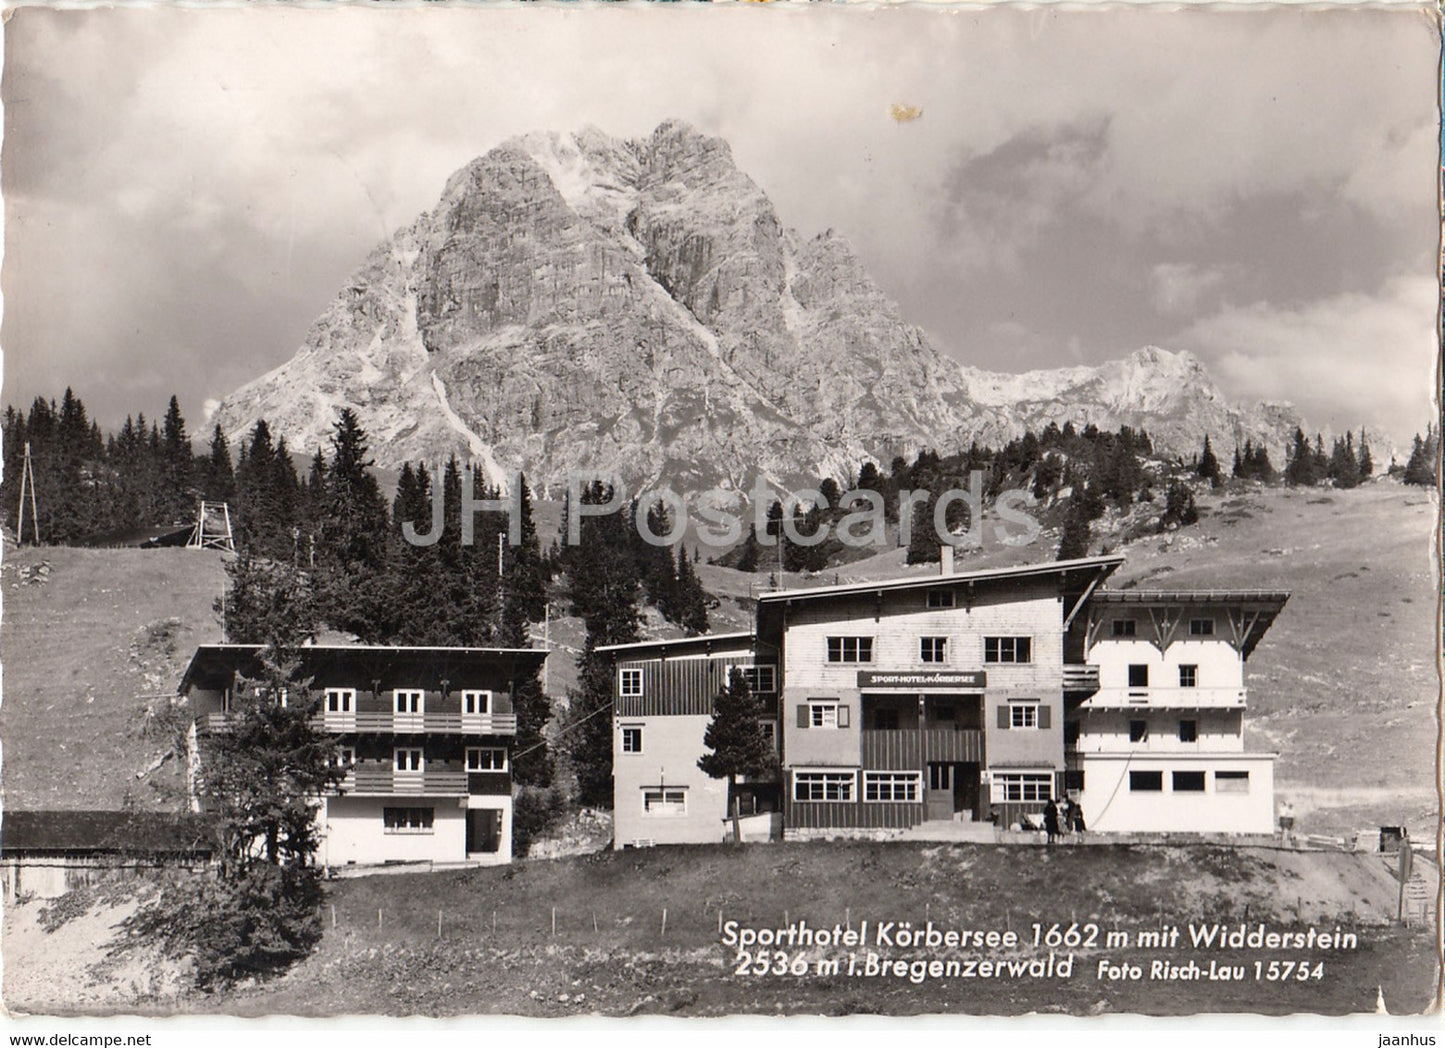 Sporthotel Korbersee 1662 m mit Widderstein 2536 m i Bregenzerwald - Austria - used - JH Postcards